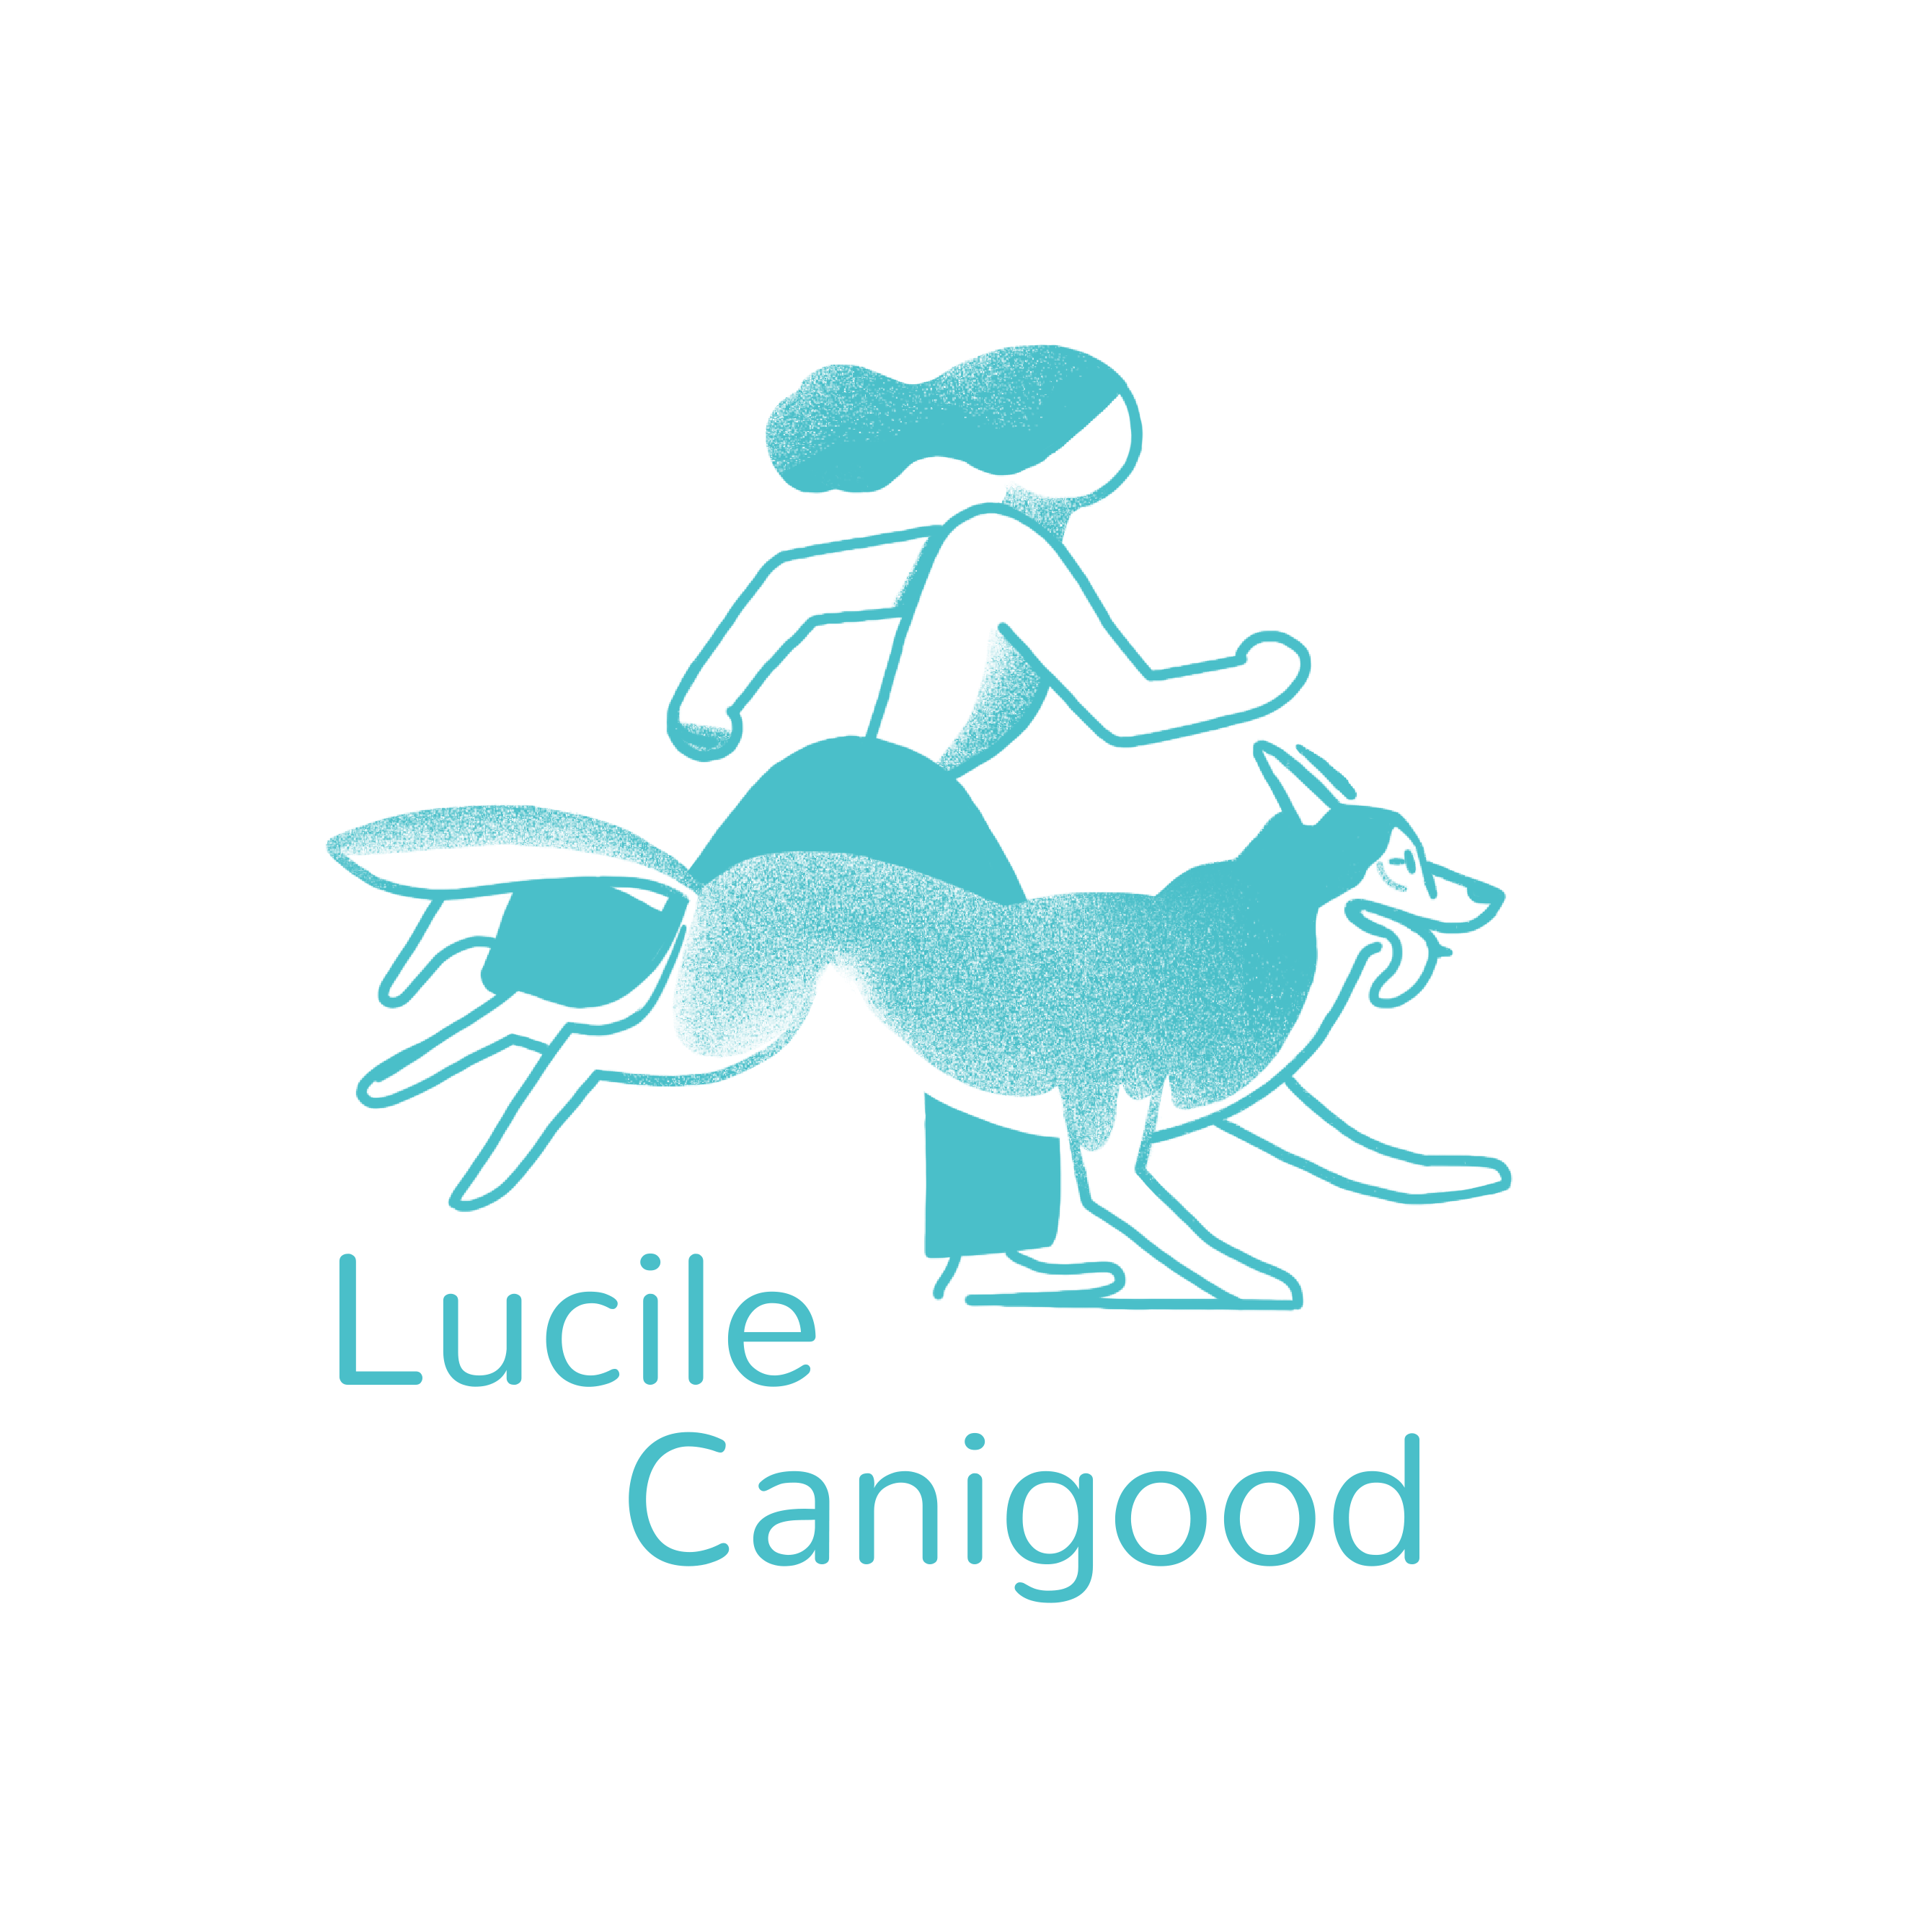 Lucile Canigood